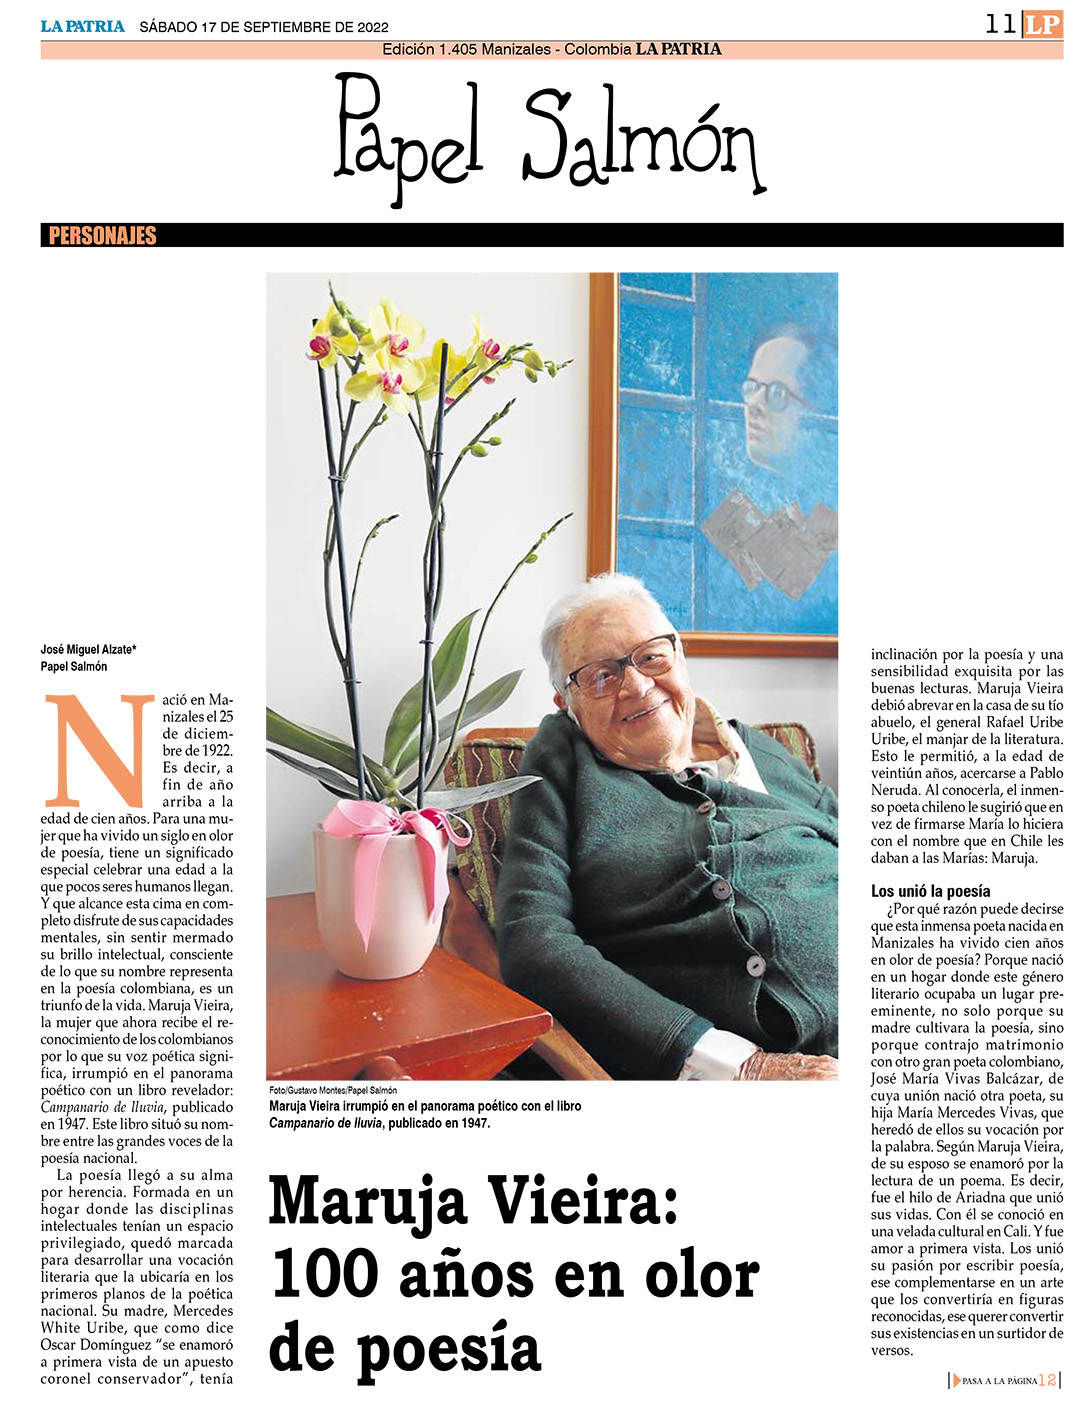 Maruja Vieira: 100 Años en Olor de Poesía. Papel Salmón / La Patria